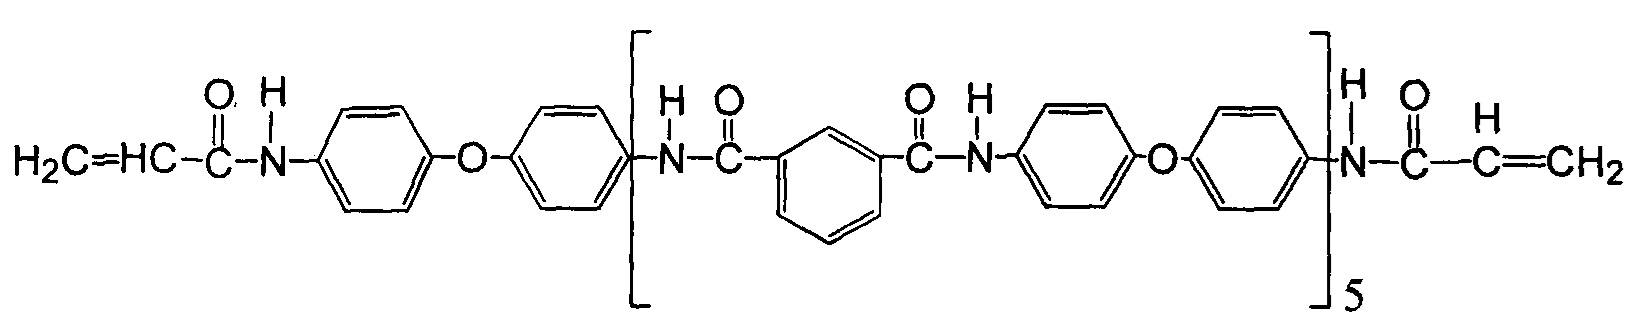 Пент 4. Фенилоксид. Нота phenyl Oxide фото.